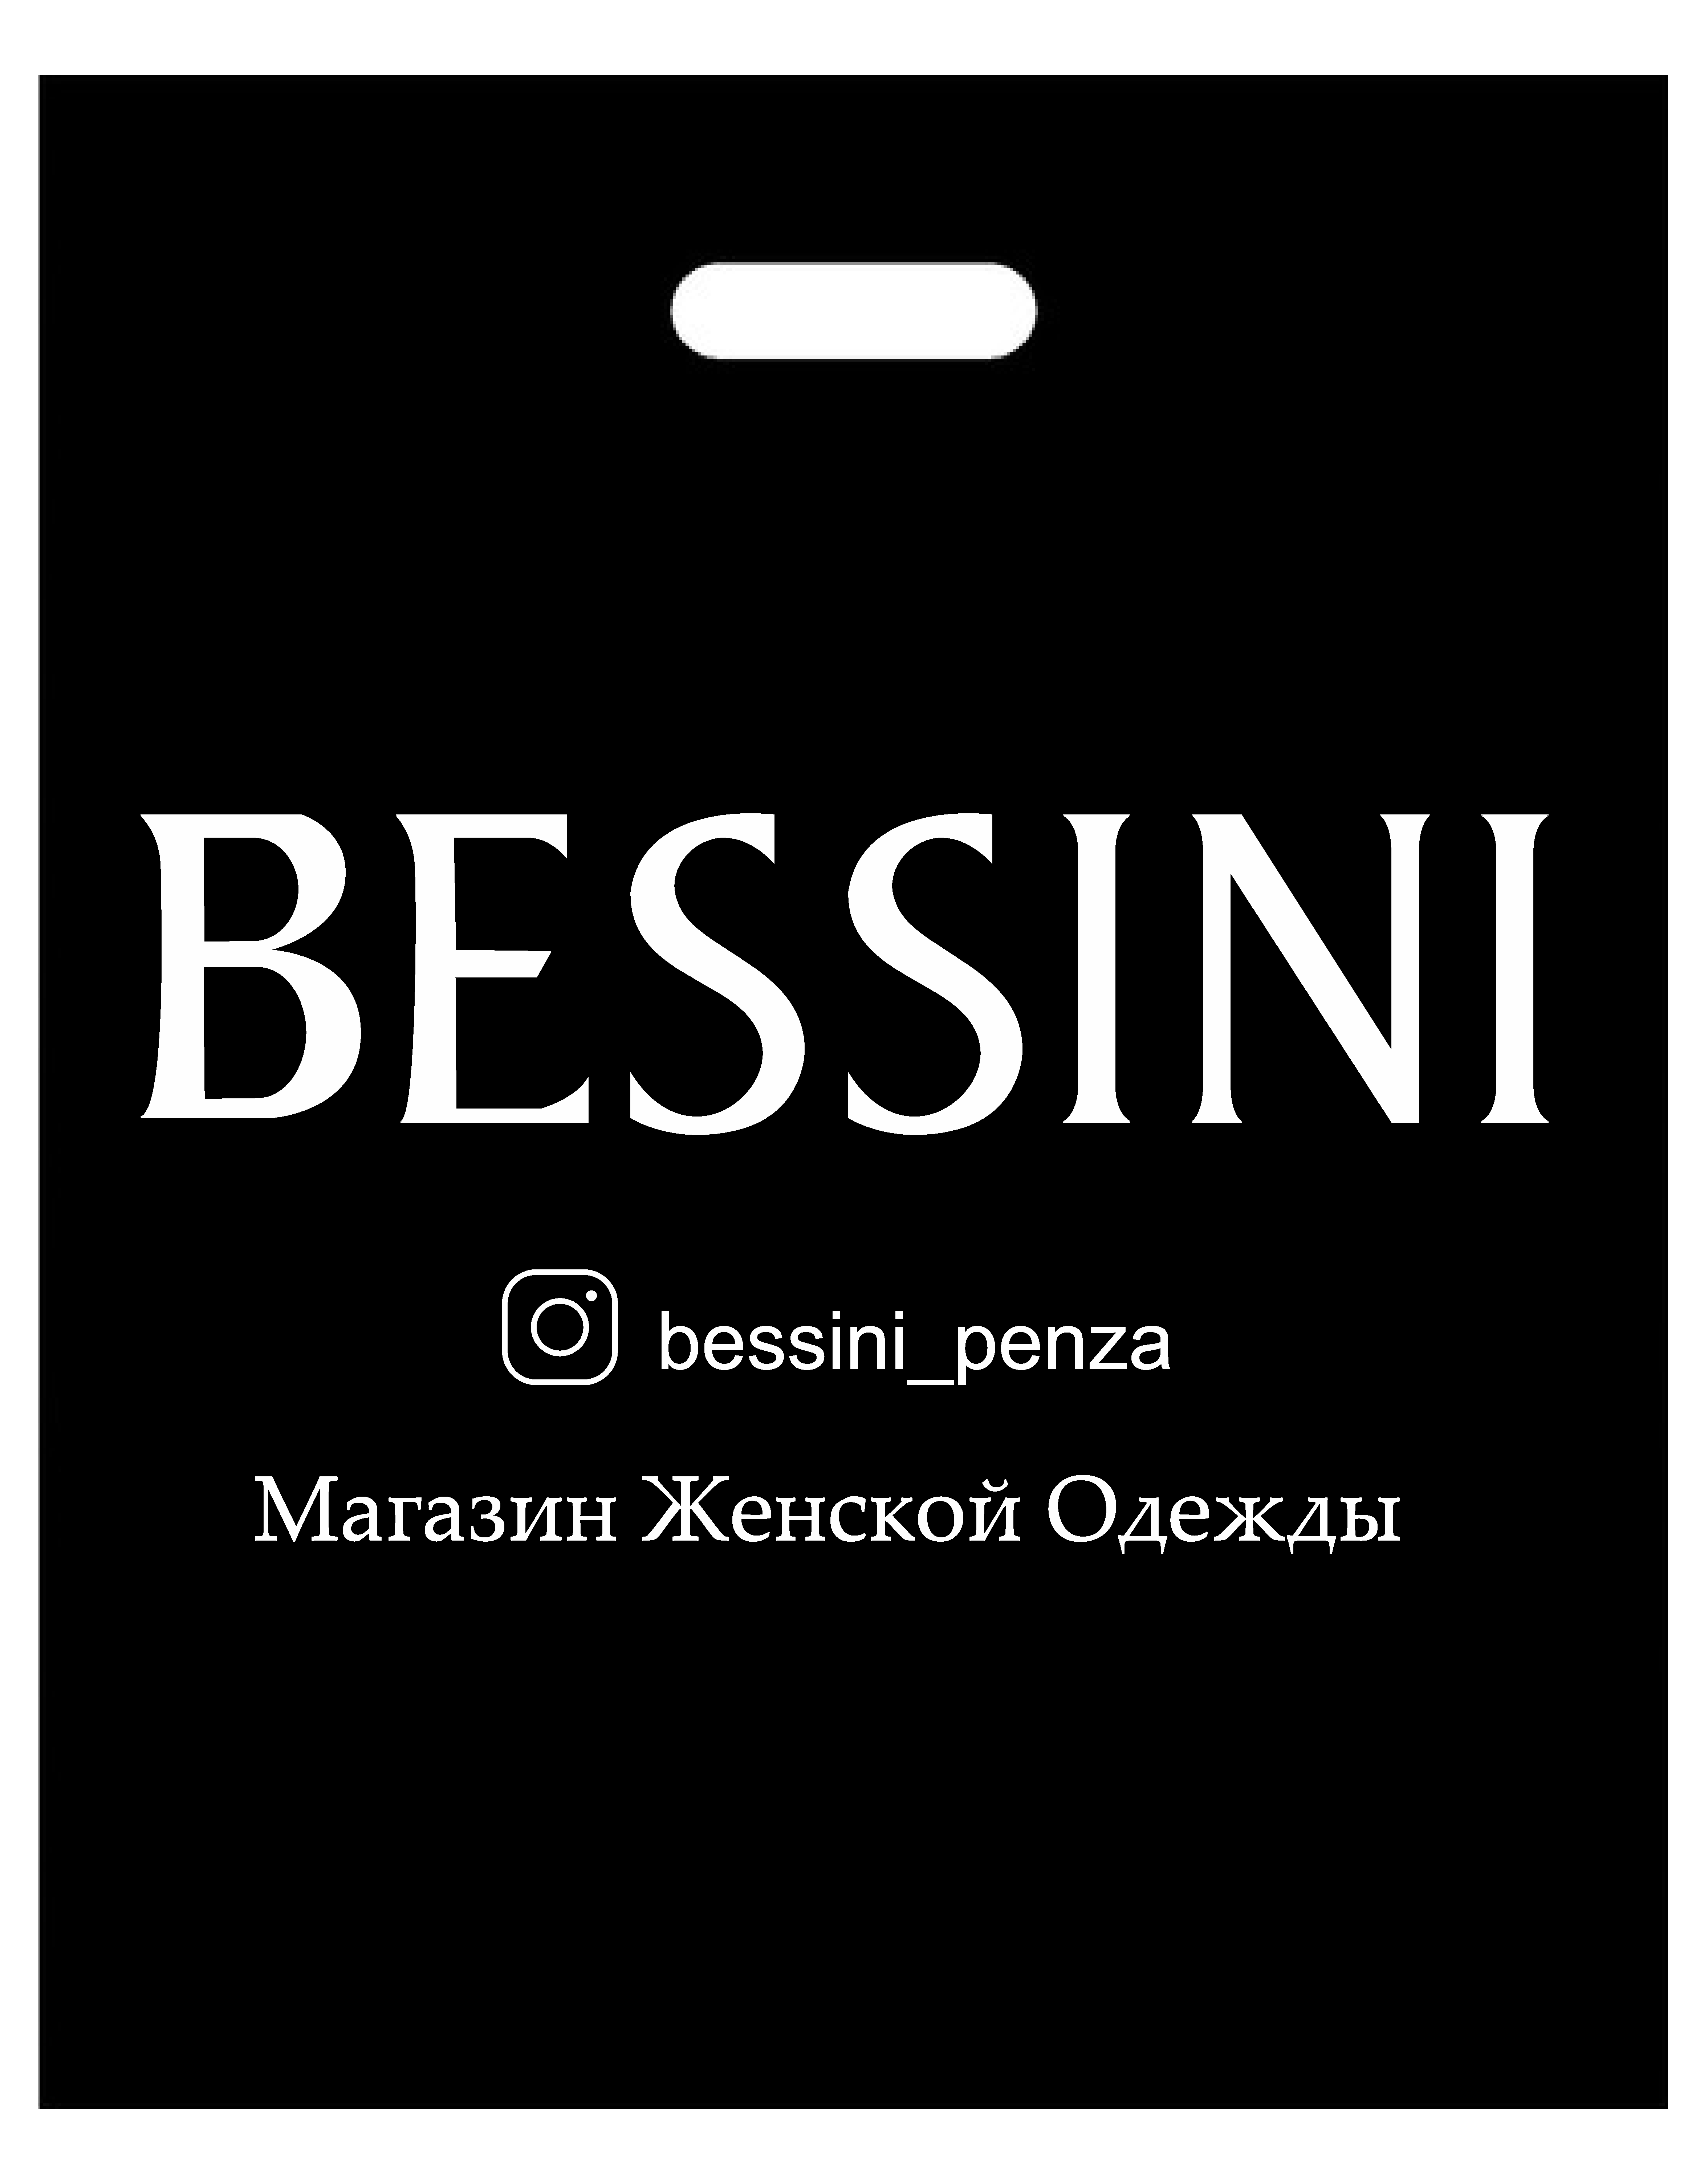 BESSINI